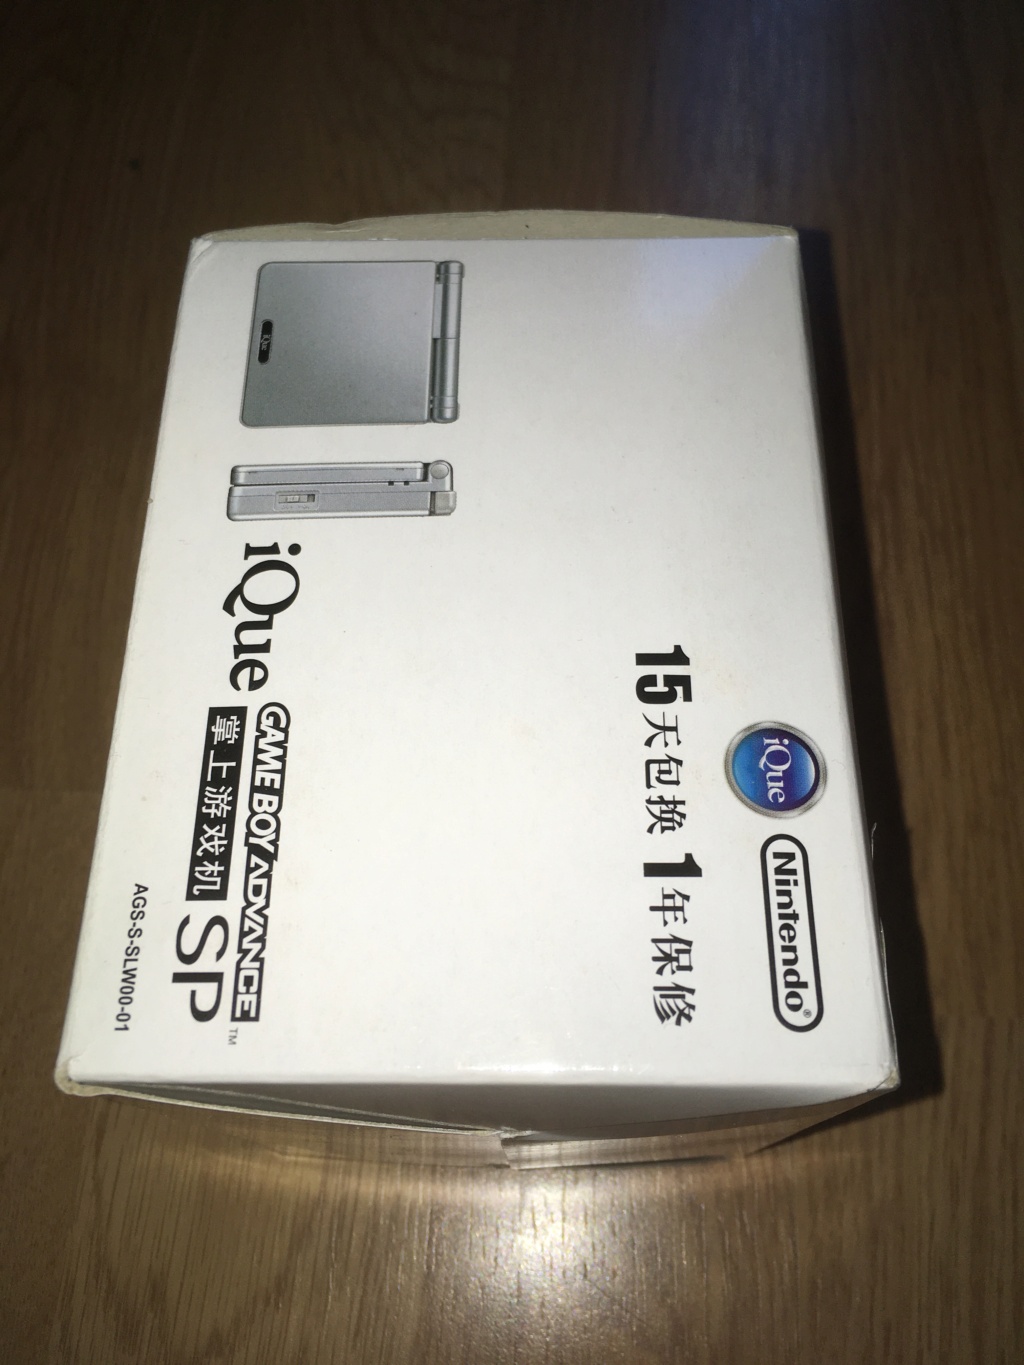 [VDS] Rarissime Game Boy Advance SP iQue Samus / Metroïd complète état neuf Img_6613